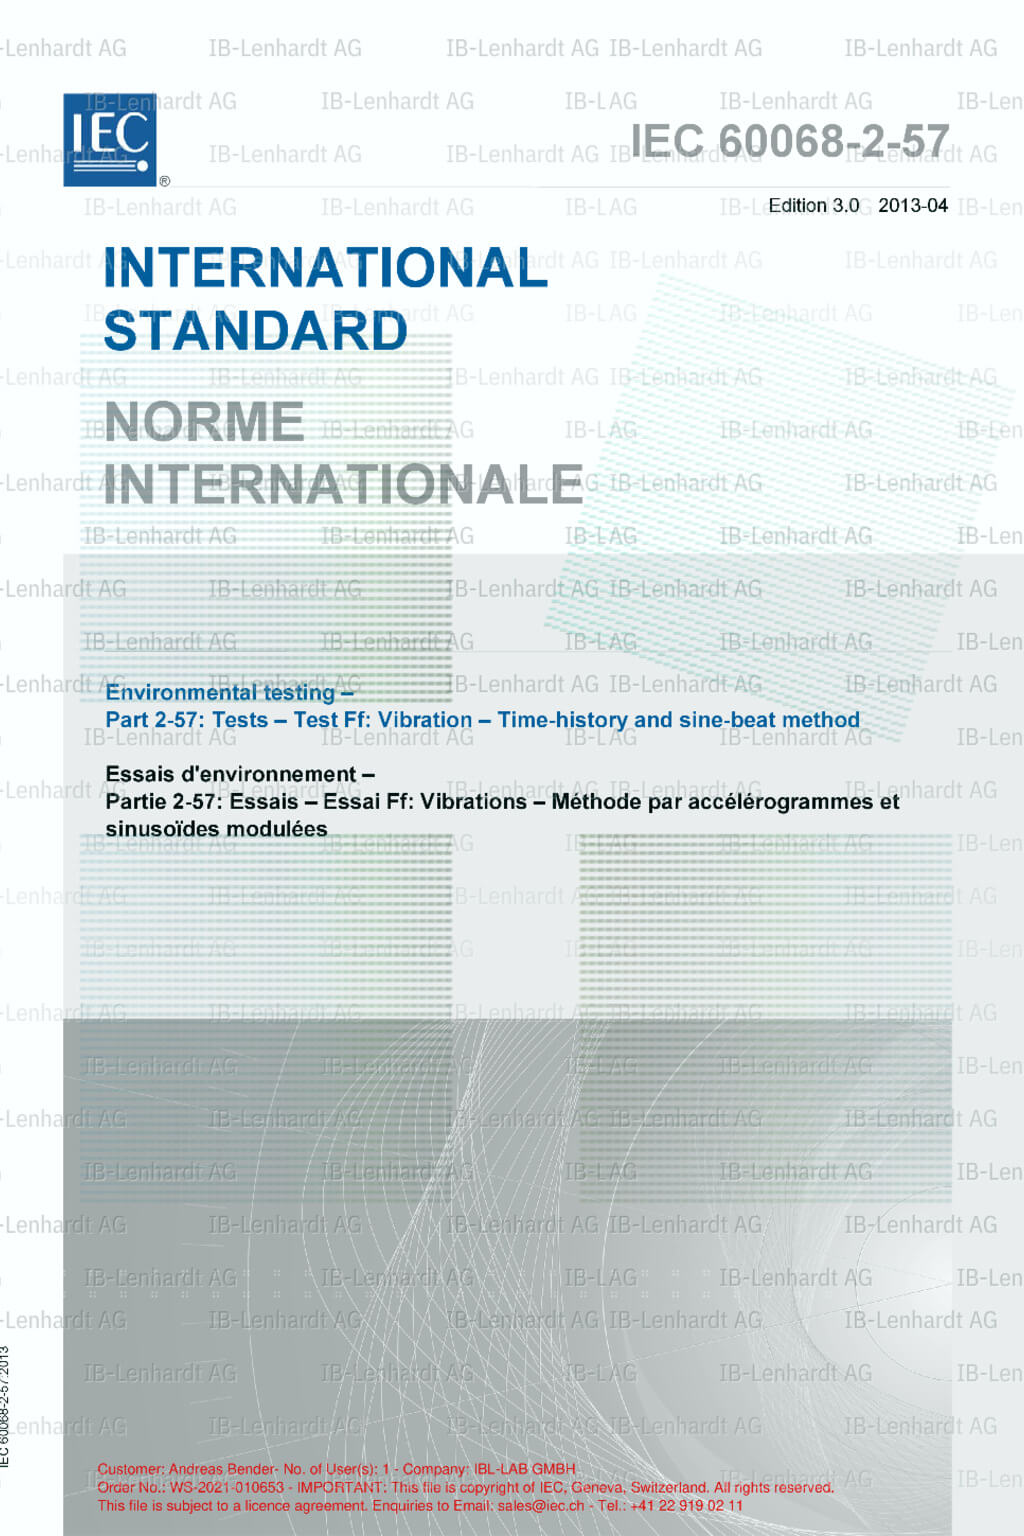 IEC-60068-2-57:2013